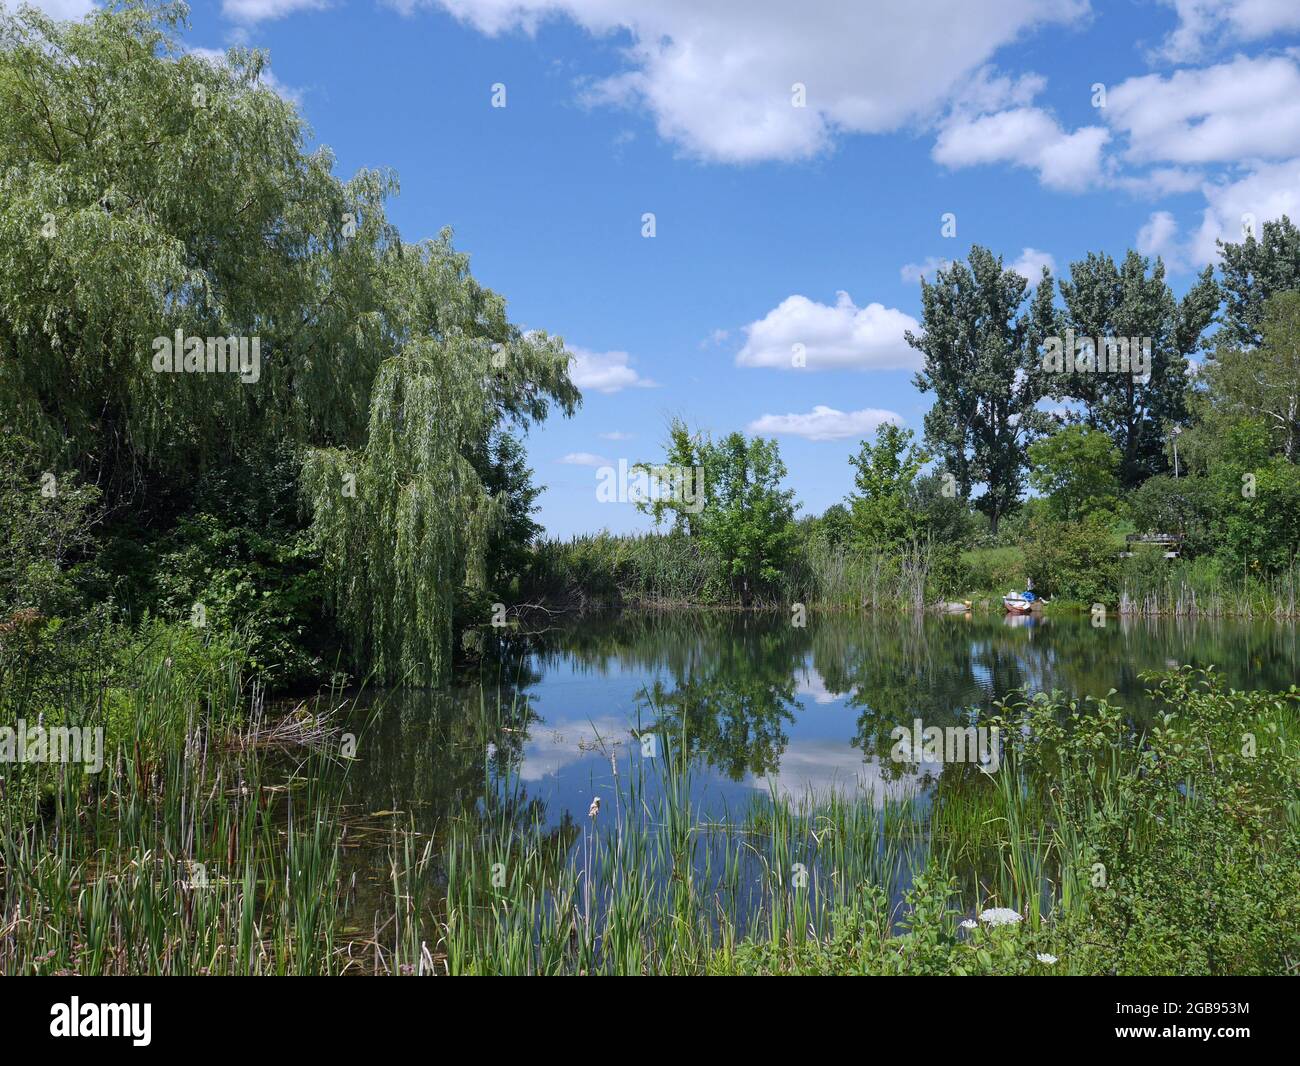 weidenbaum und Bullrushes umgeben einen ruhigen Teich, der den Himmel reflektiert Stockfoto